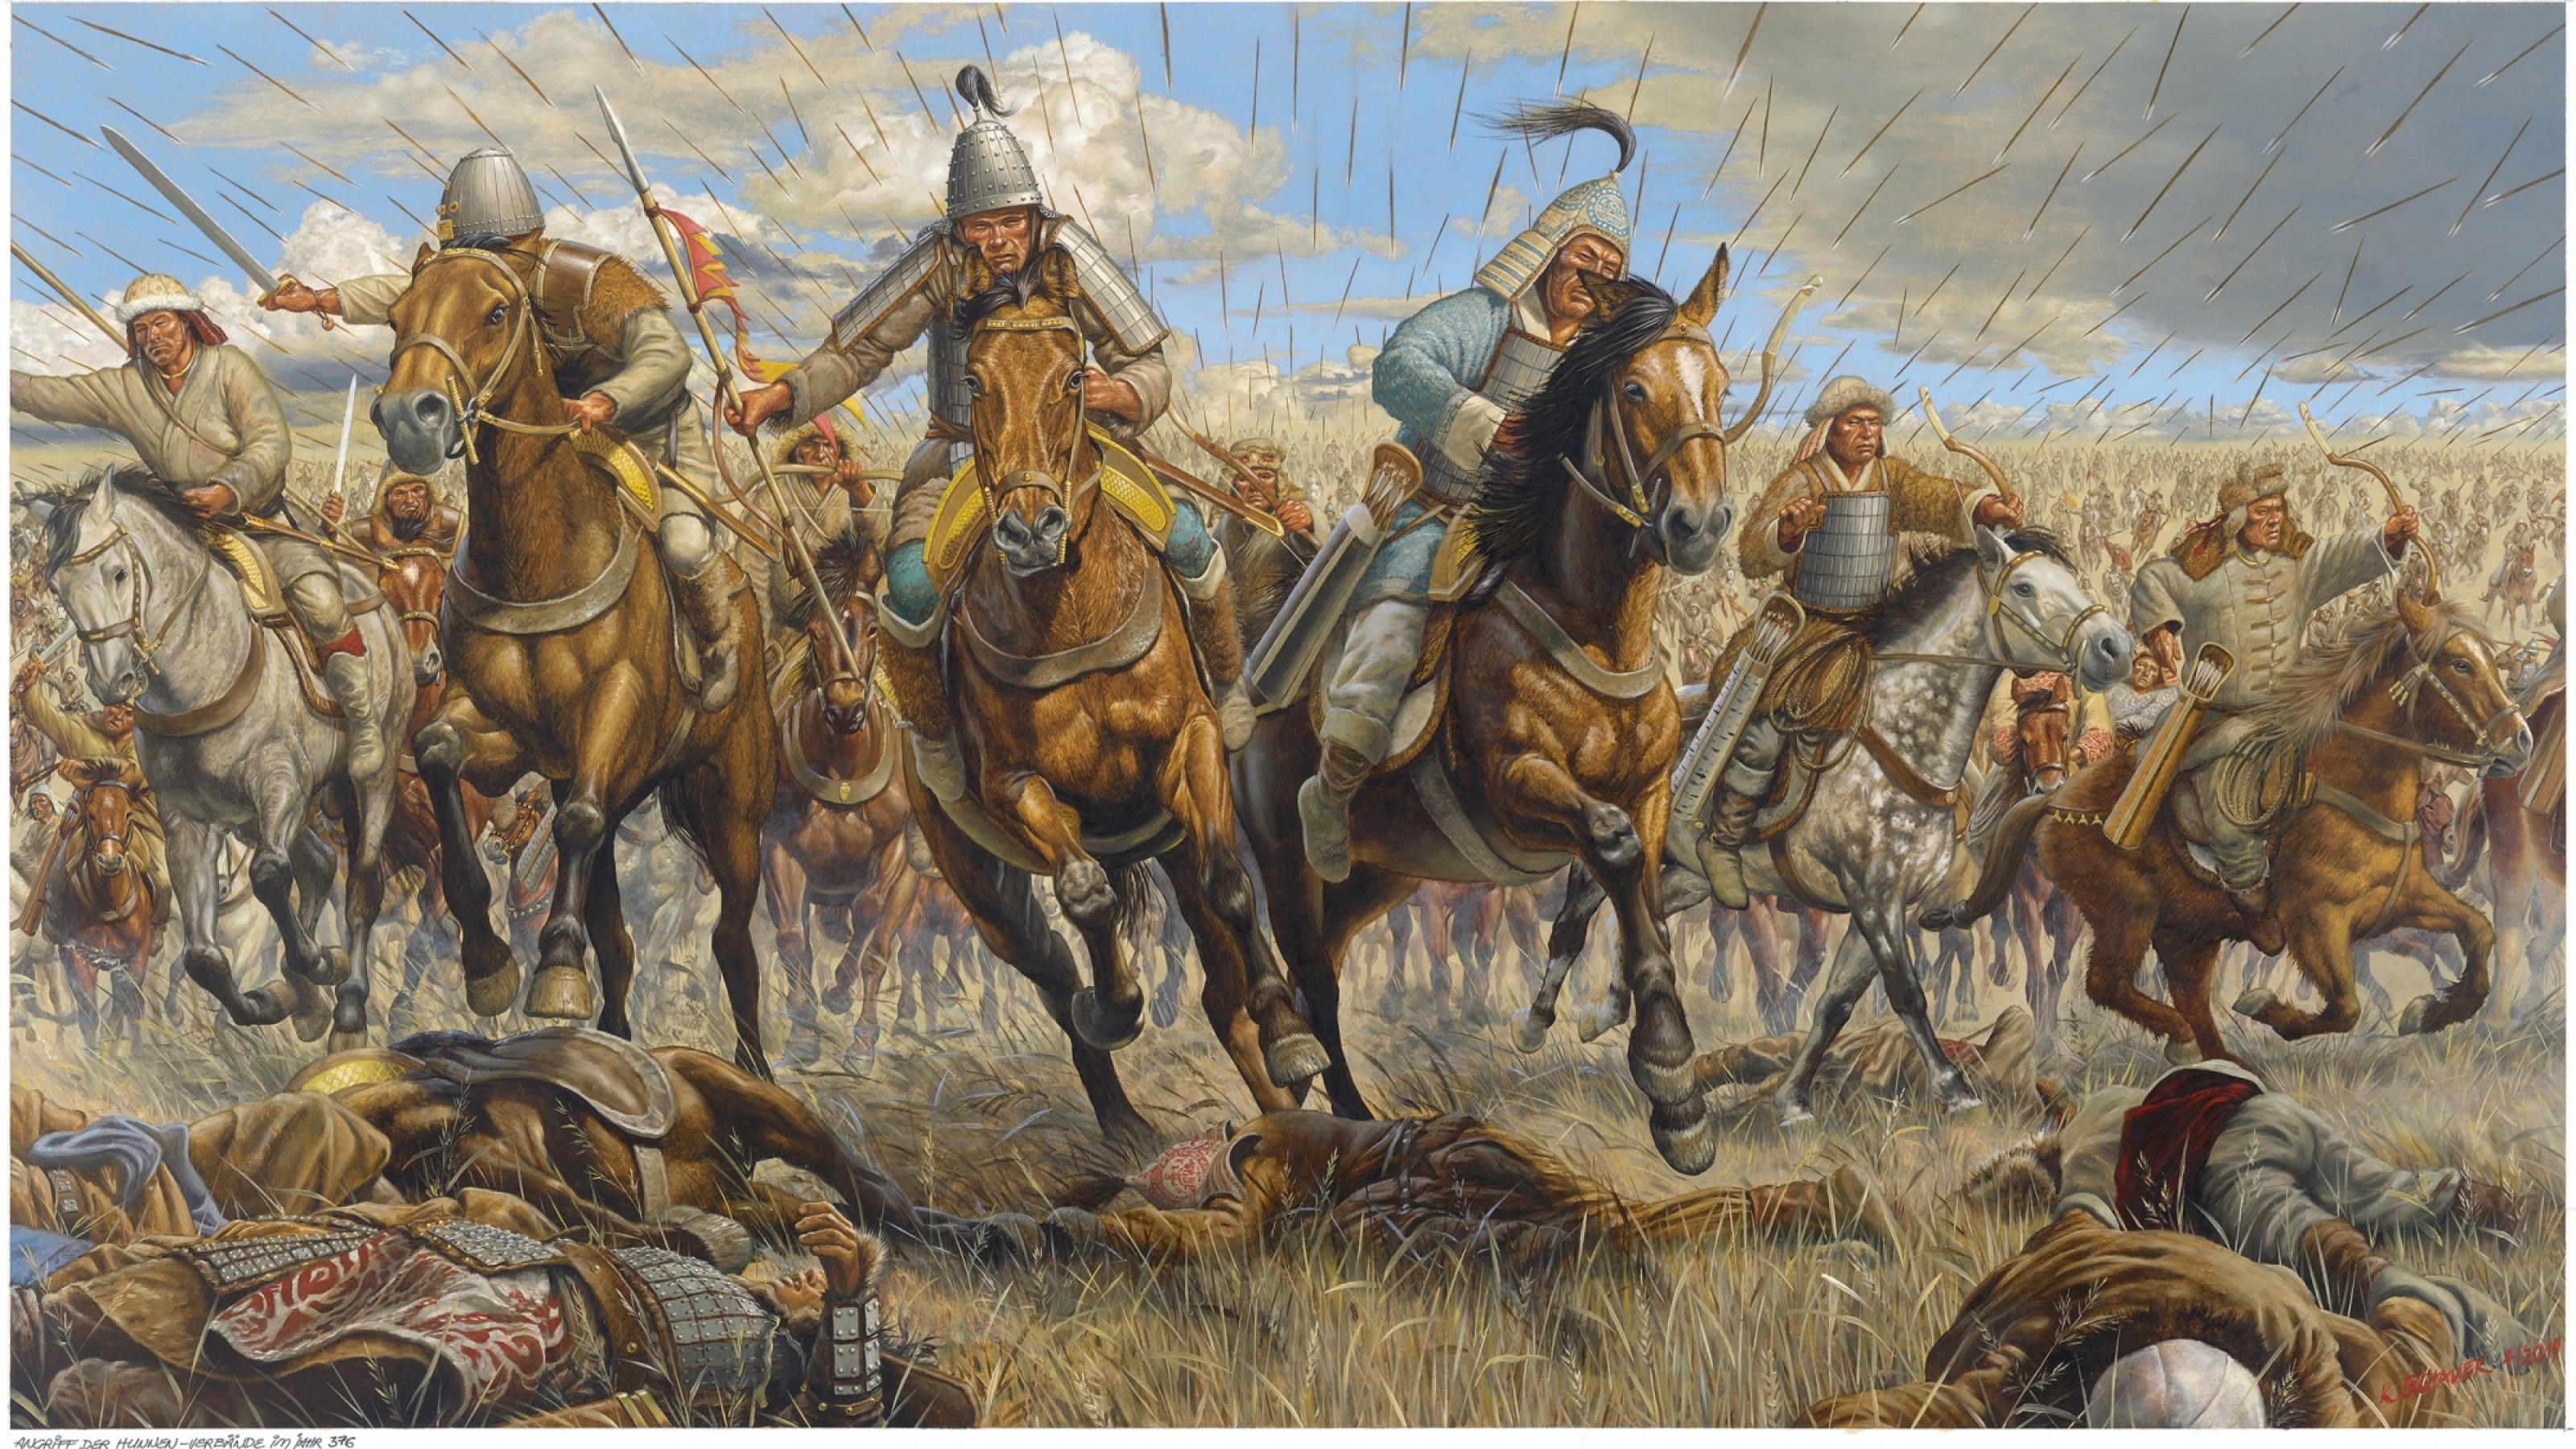 Das Bild zeige eine gemalte Szene: In einer Graslandschaft galoppieren mehrere Reiterkrieger zum Angriff. Aus dem Hintergrund werden zahlreiche Pfeile in Richtung des Betrachters geschossen. Gefallene liegen auf dem Boden.